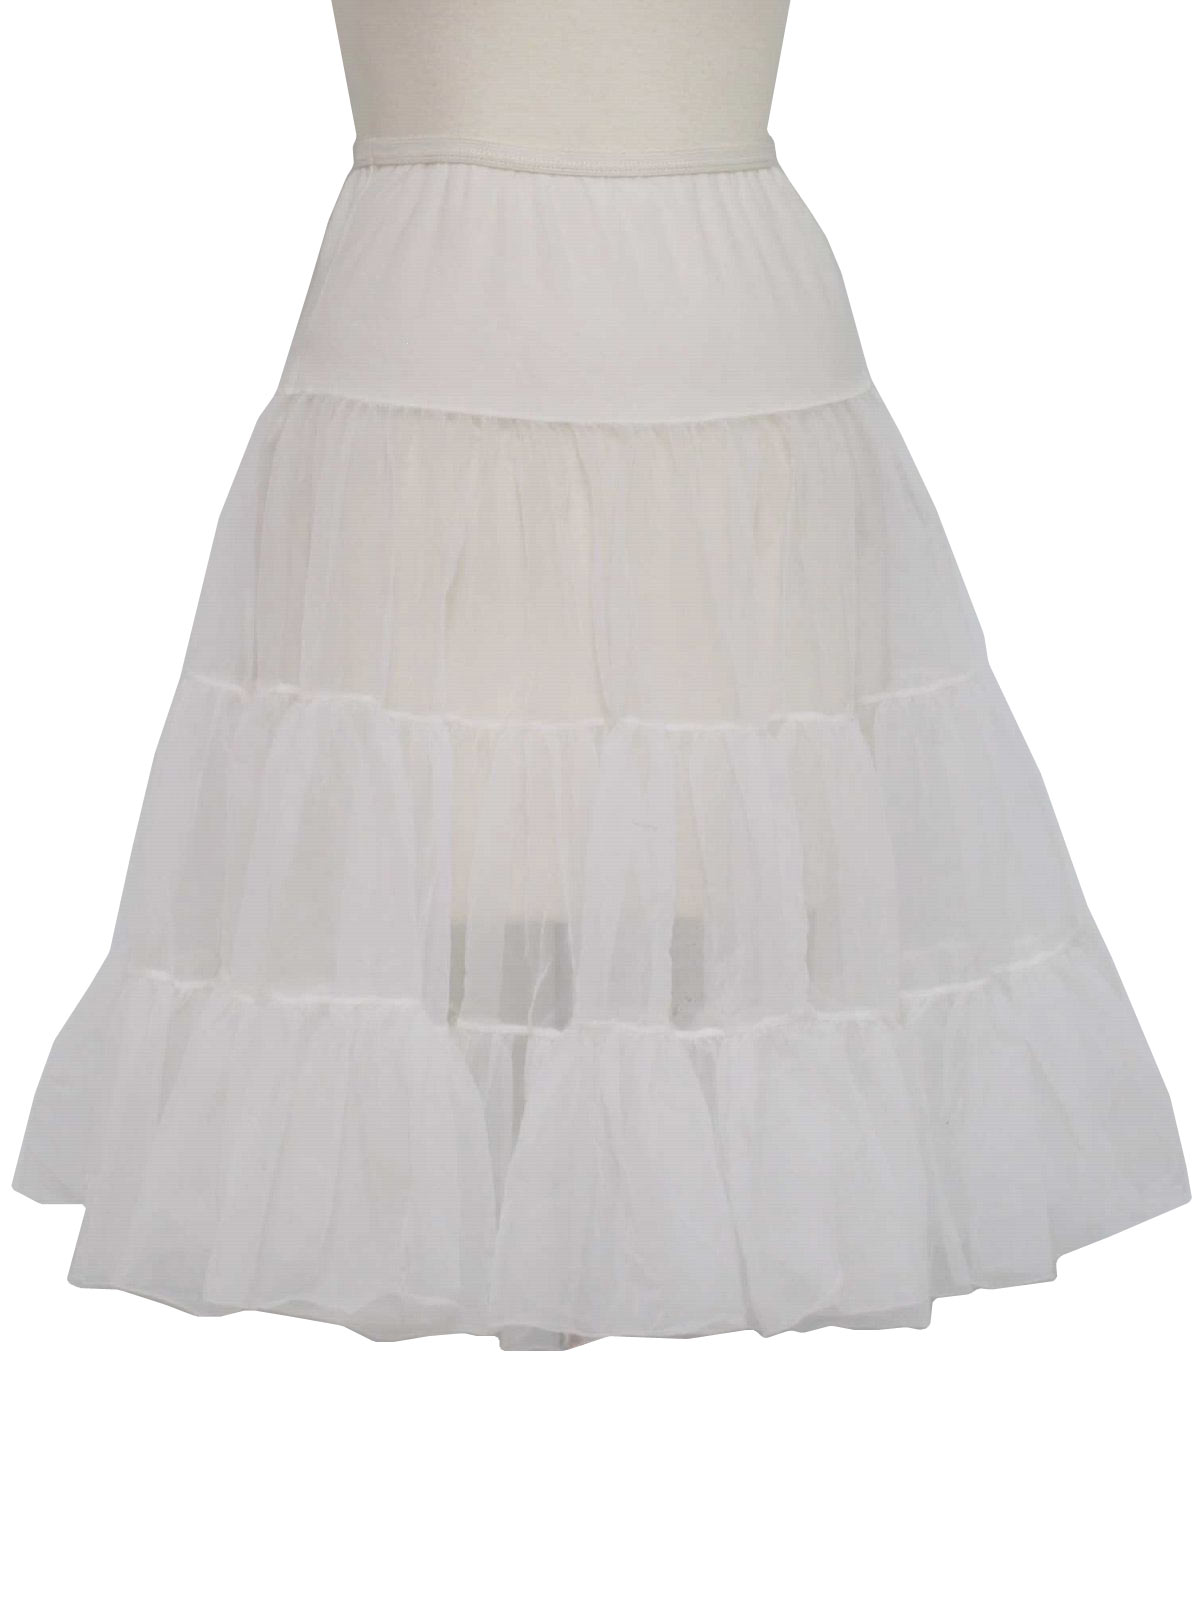 1960's Retro Skirt: 60s -Missing Label- Womens white sheer nylon knit ...